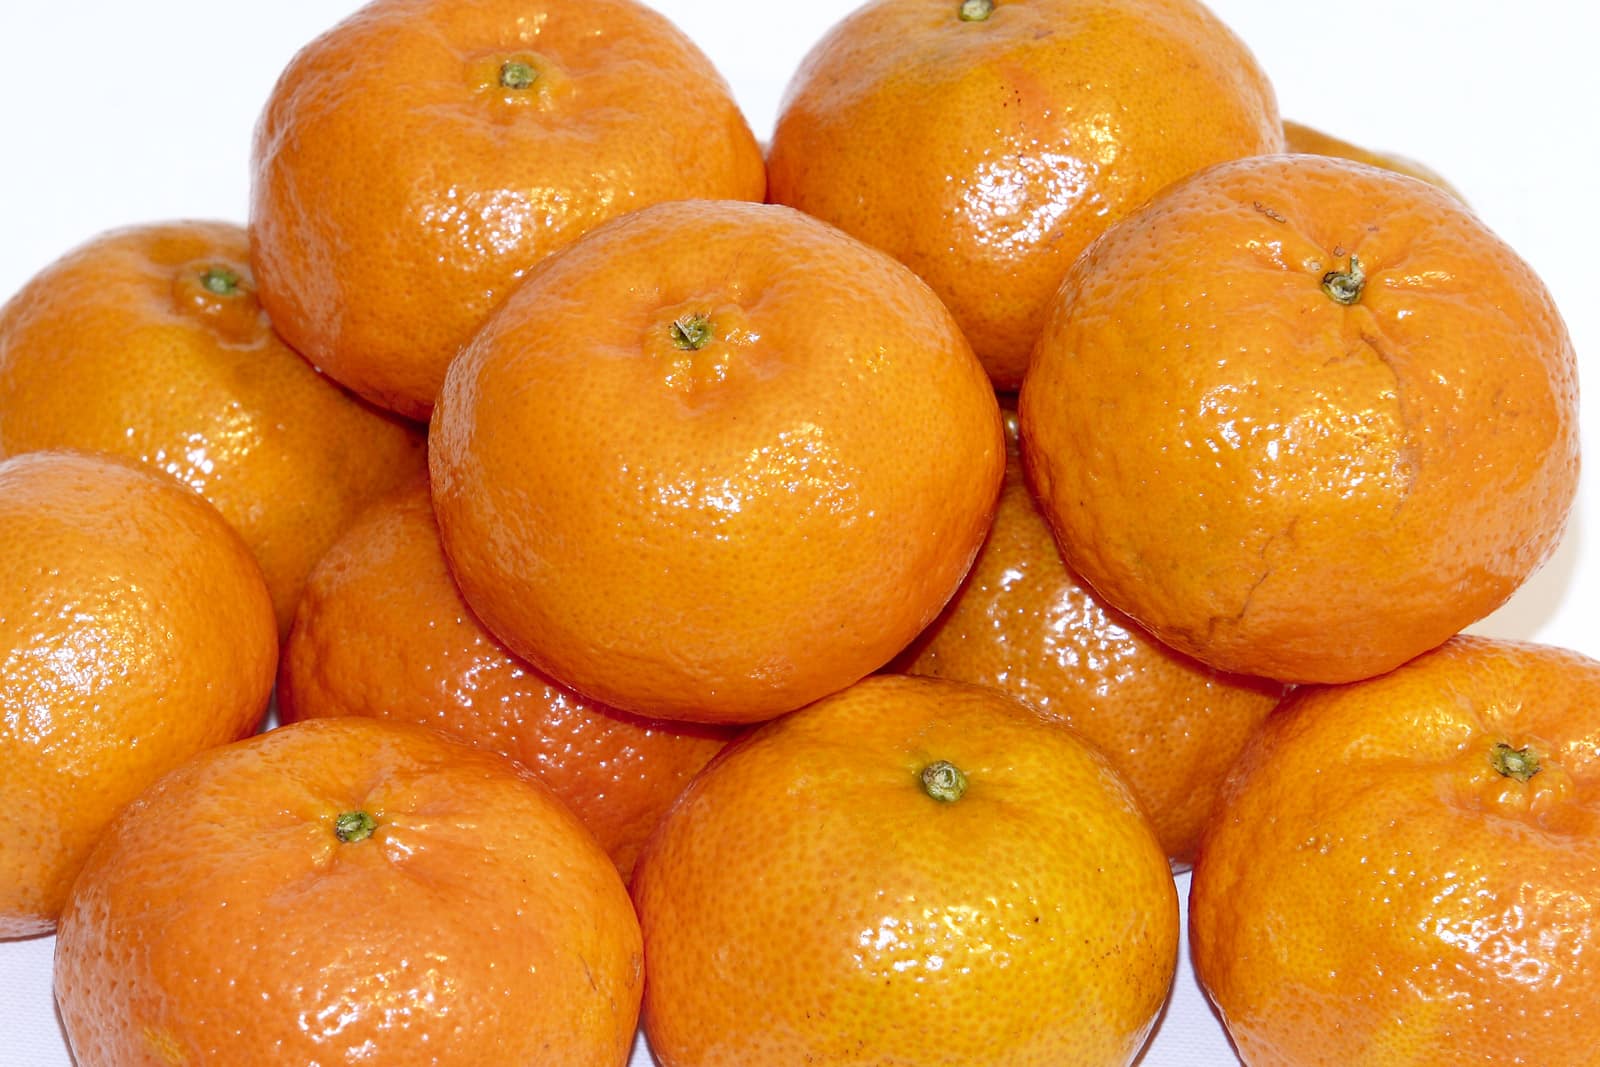 Dejte do těsta mandarinky a užijte si jedinečný dezert